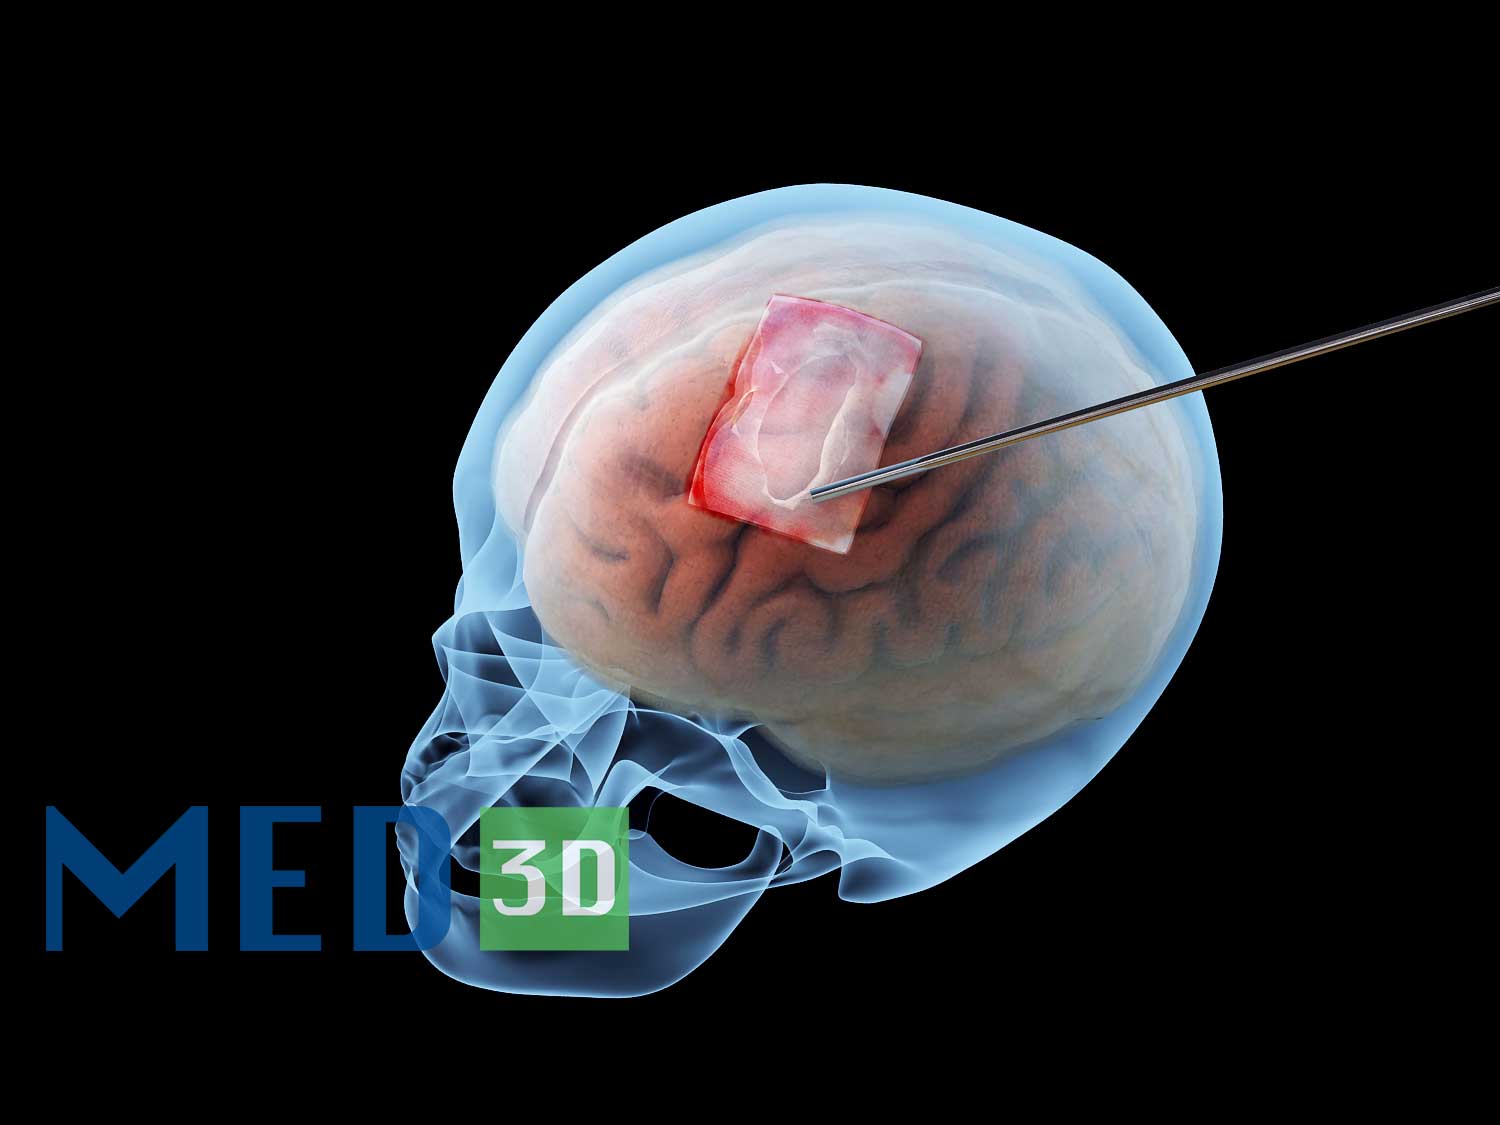  【高清】医学产品3D效果图制作